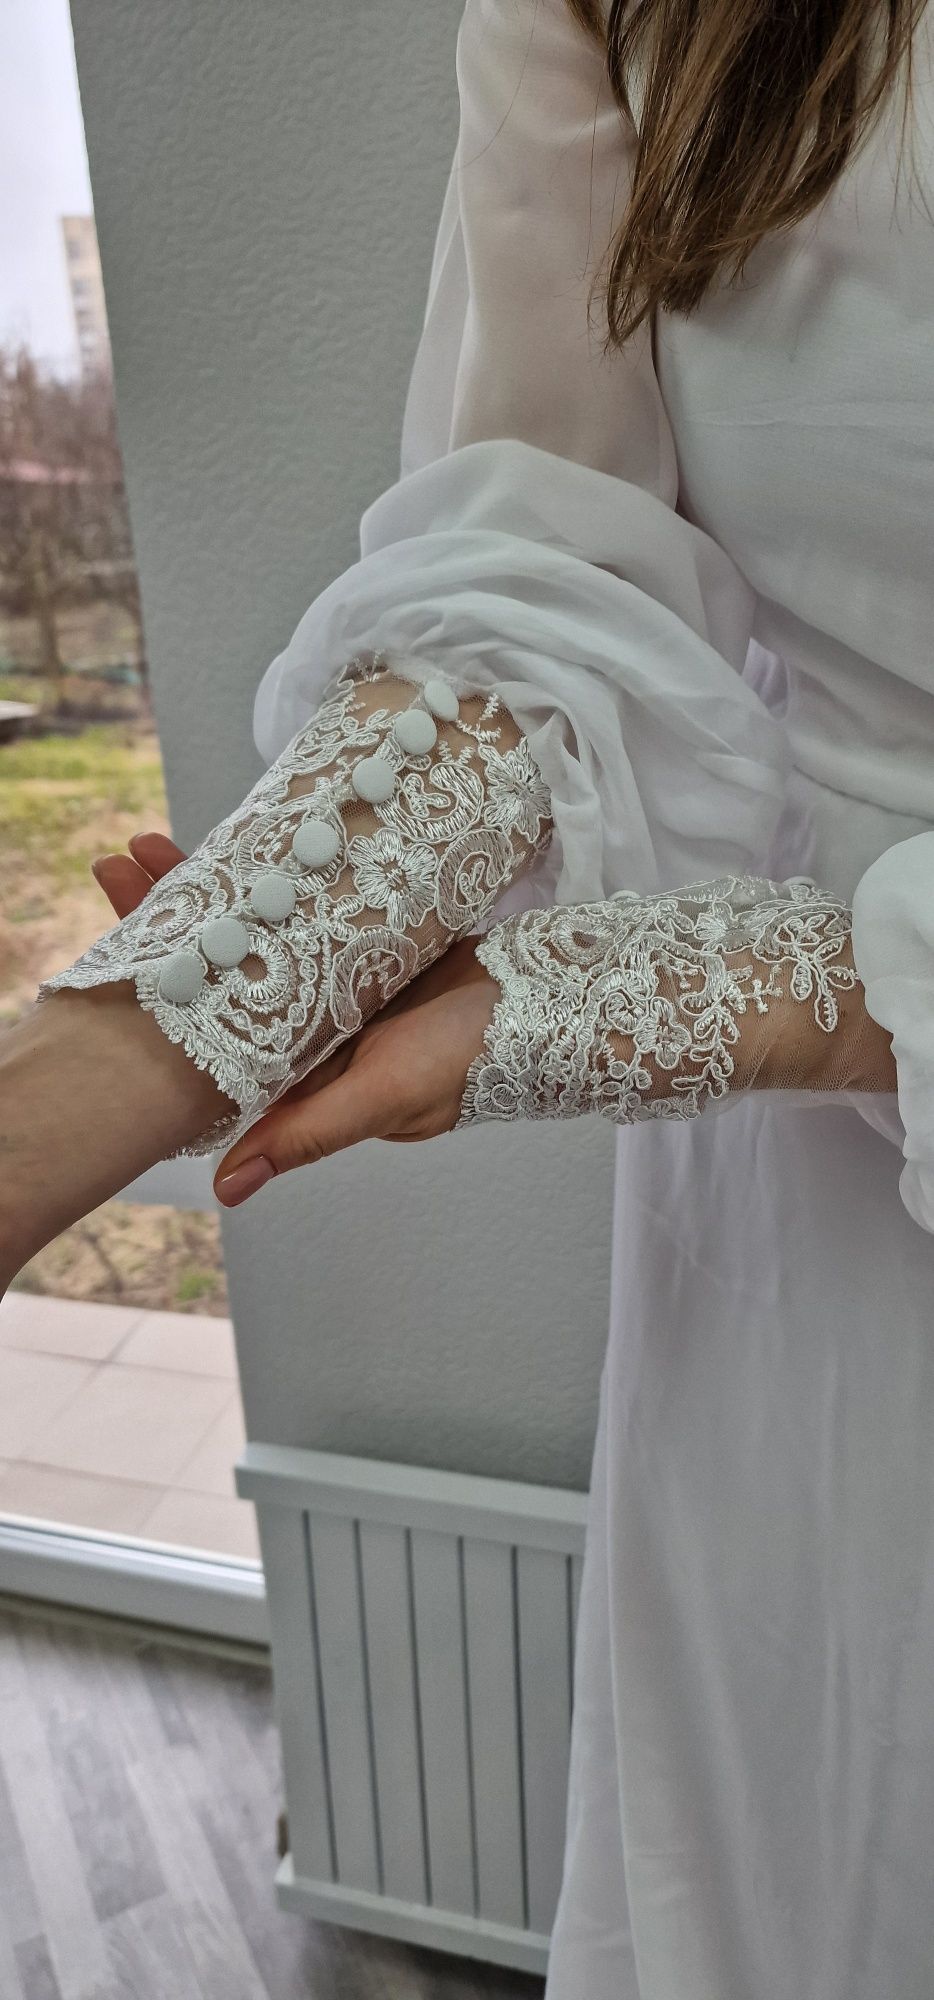 Біла святкова весільна сукня без шлейфа, мереживо